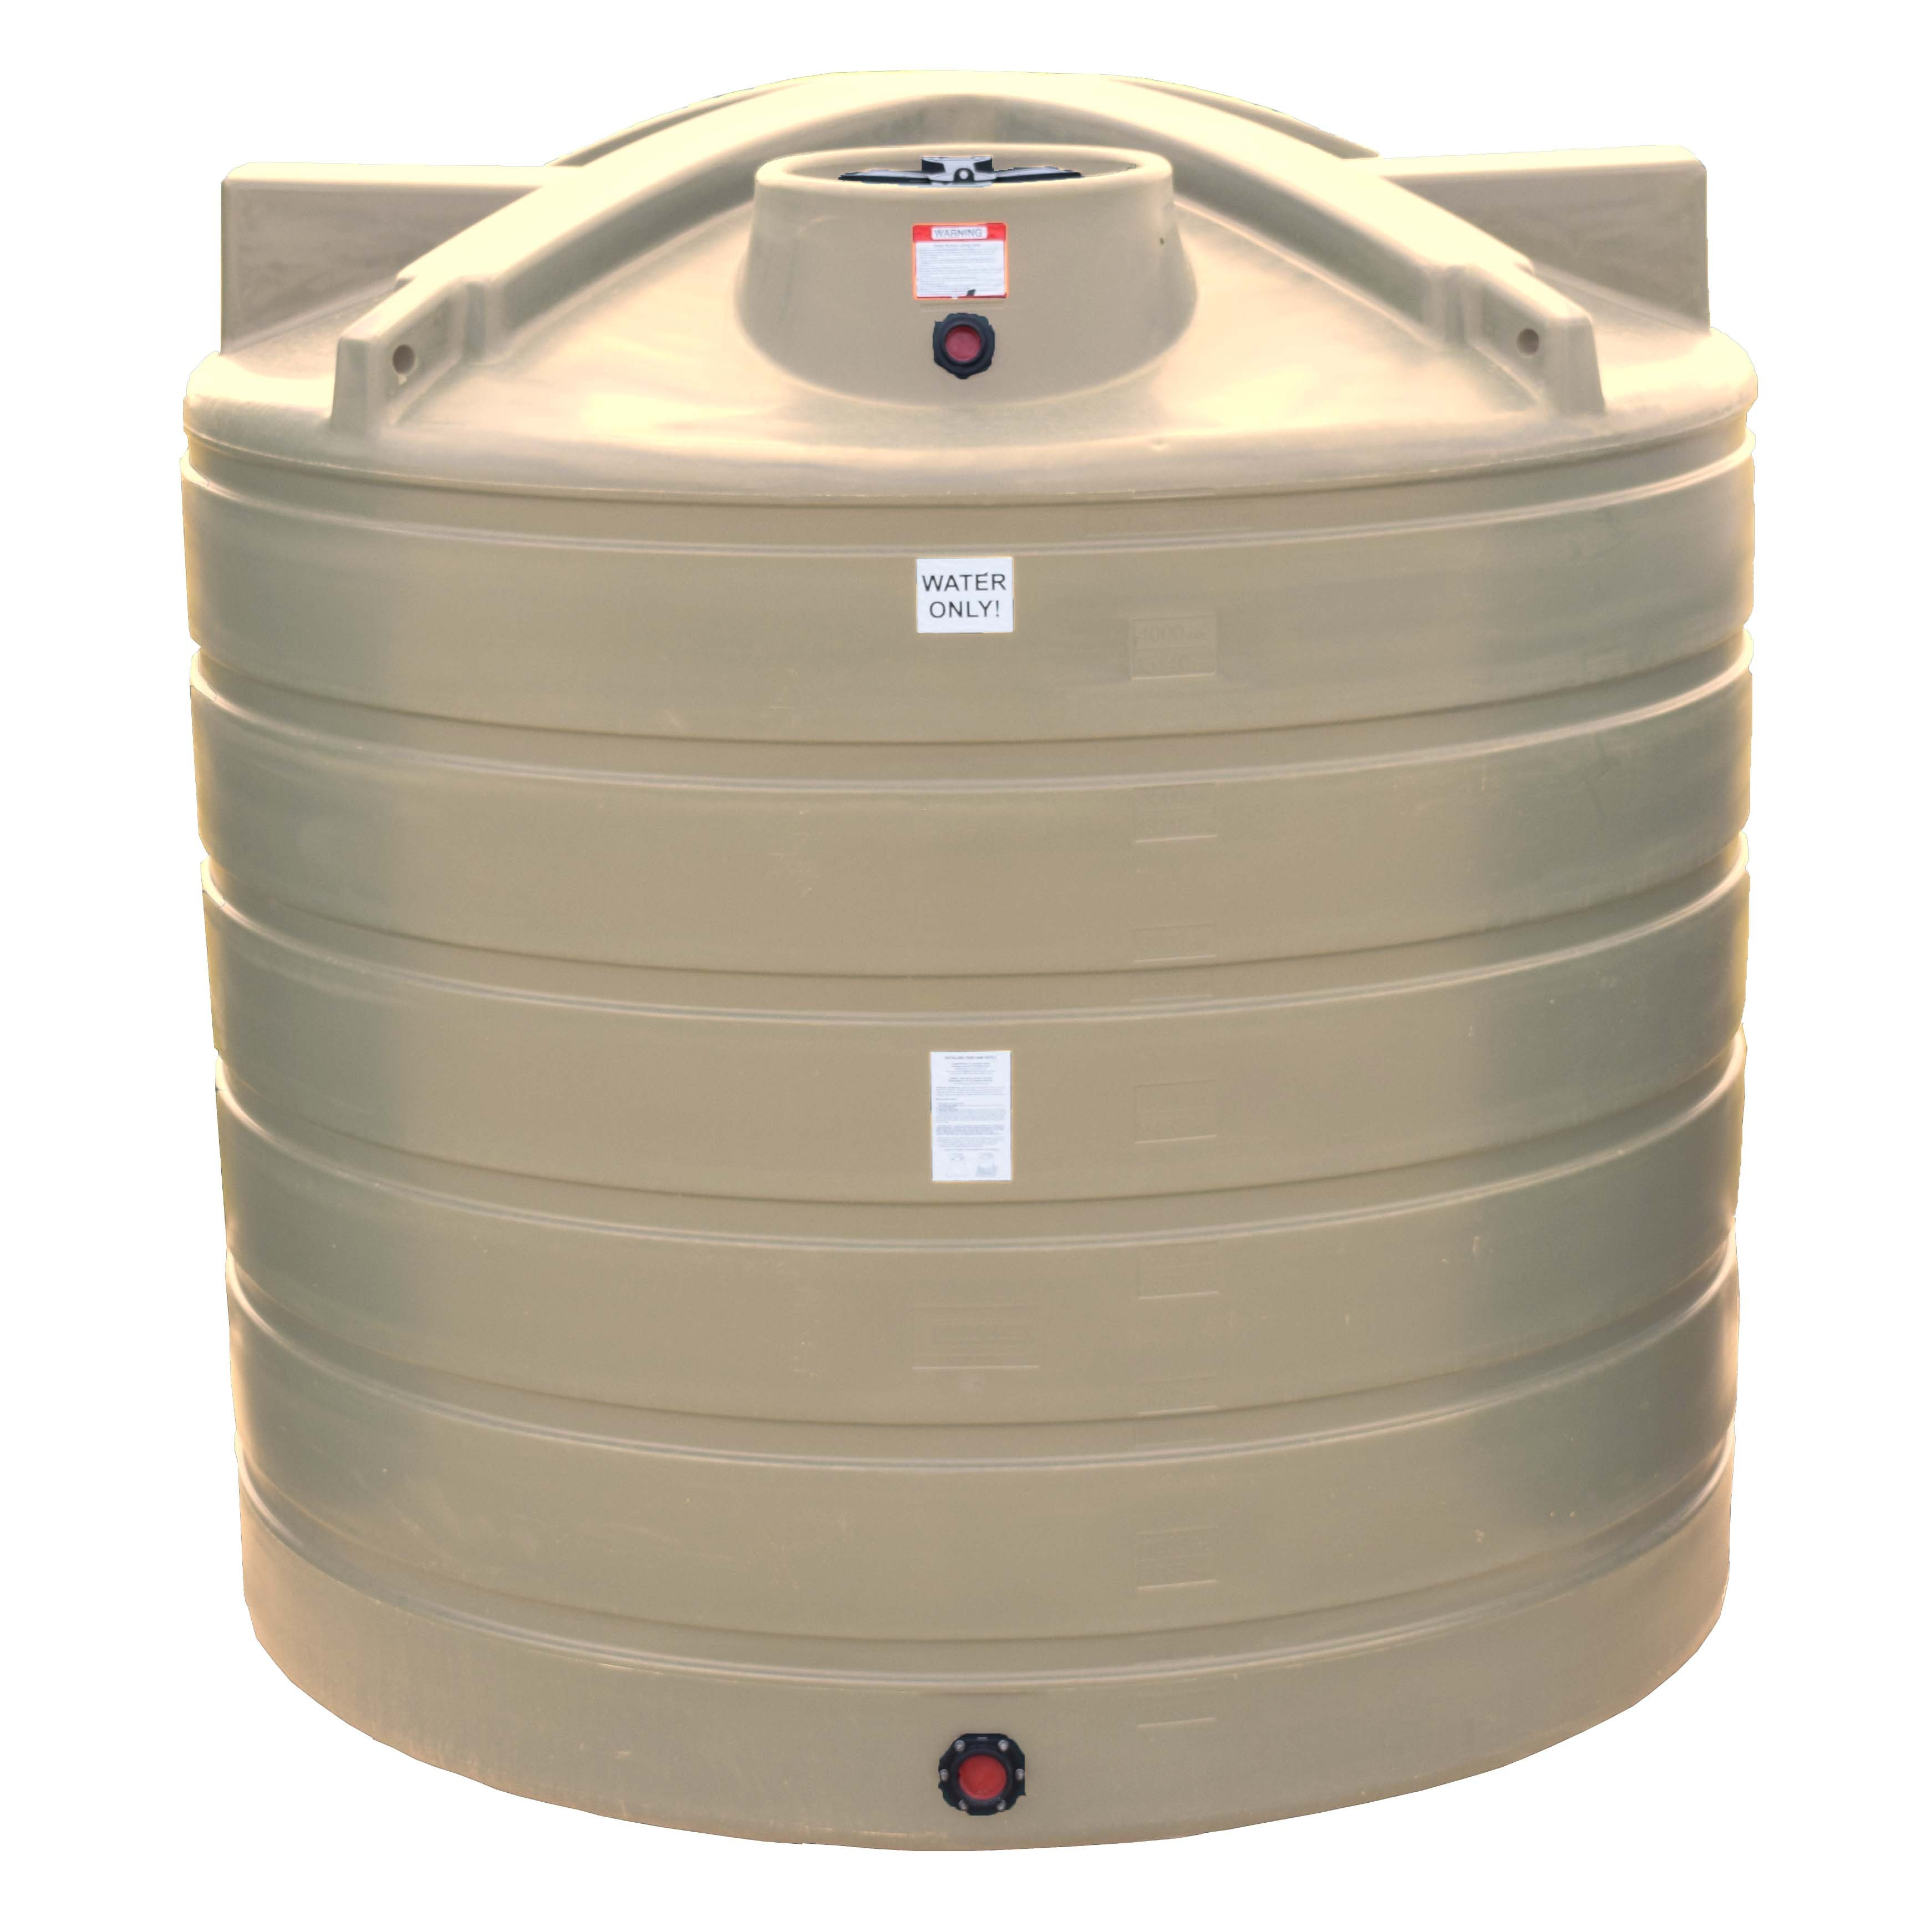 Best ideas about Vertical Water Storage Tank
. Save or Pin 2000 Gallon Vertical Water Storage Tank Now.